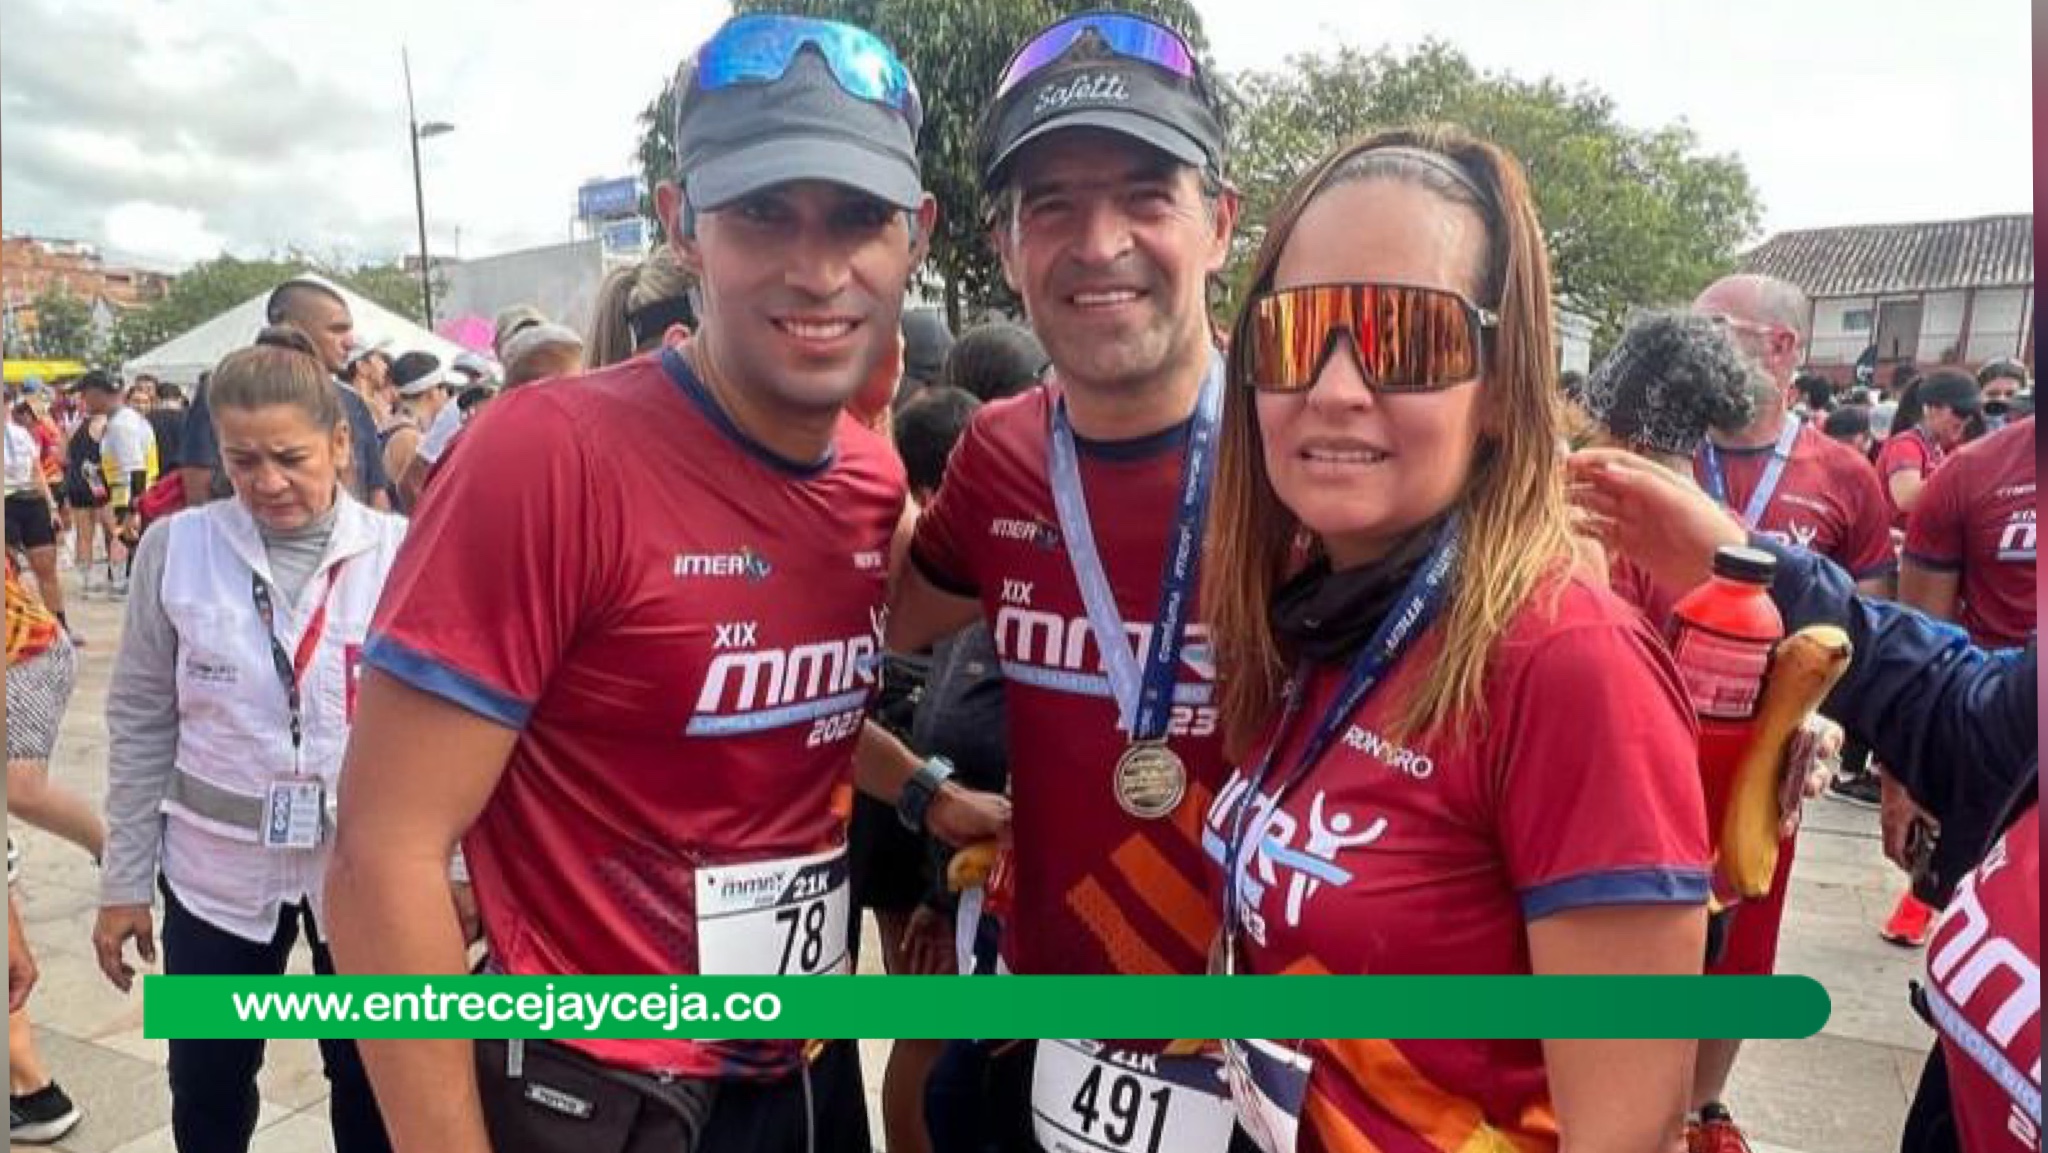 Fico se le midió a los 21k de la media maratón de Rionegro